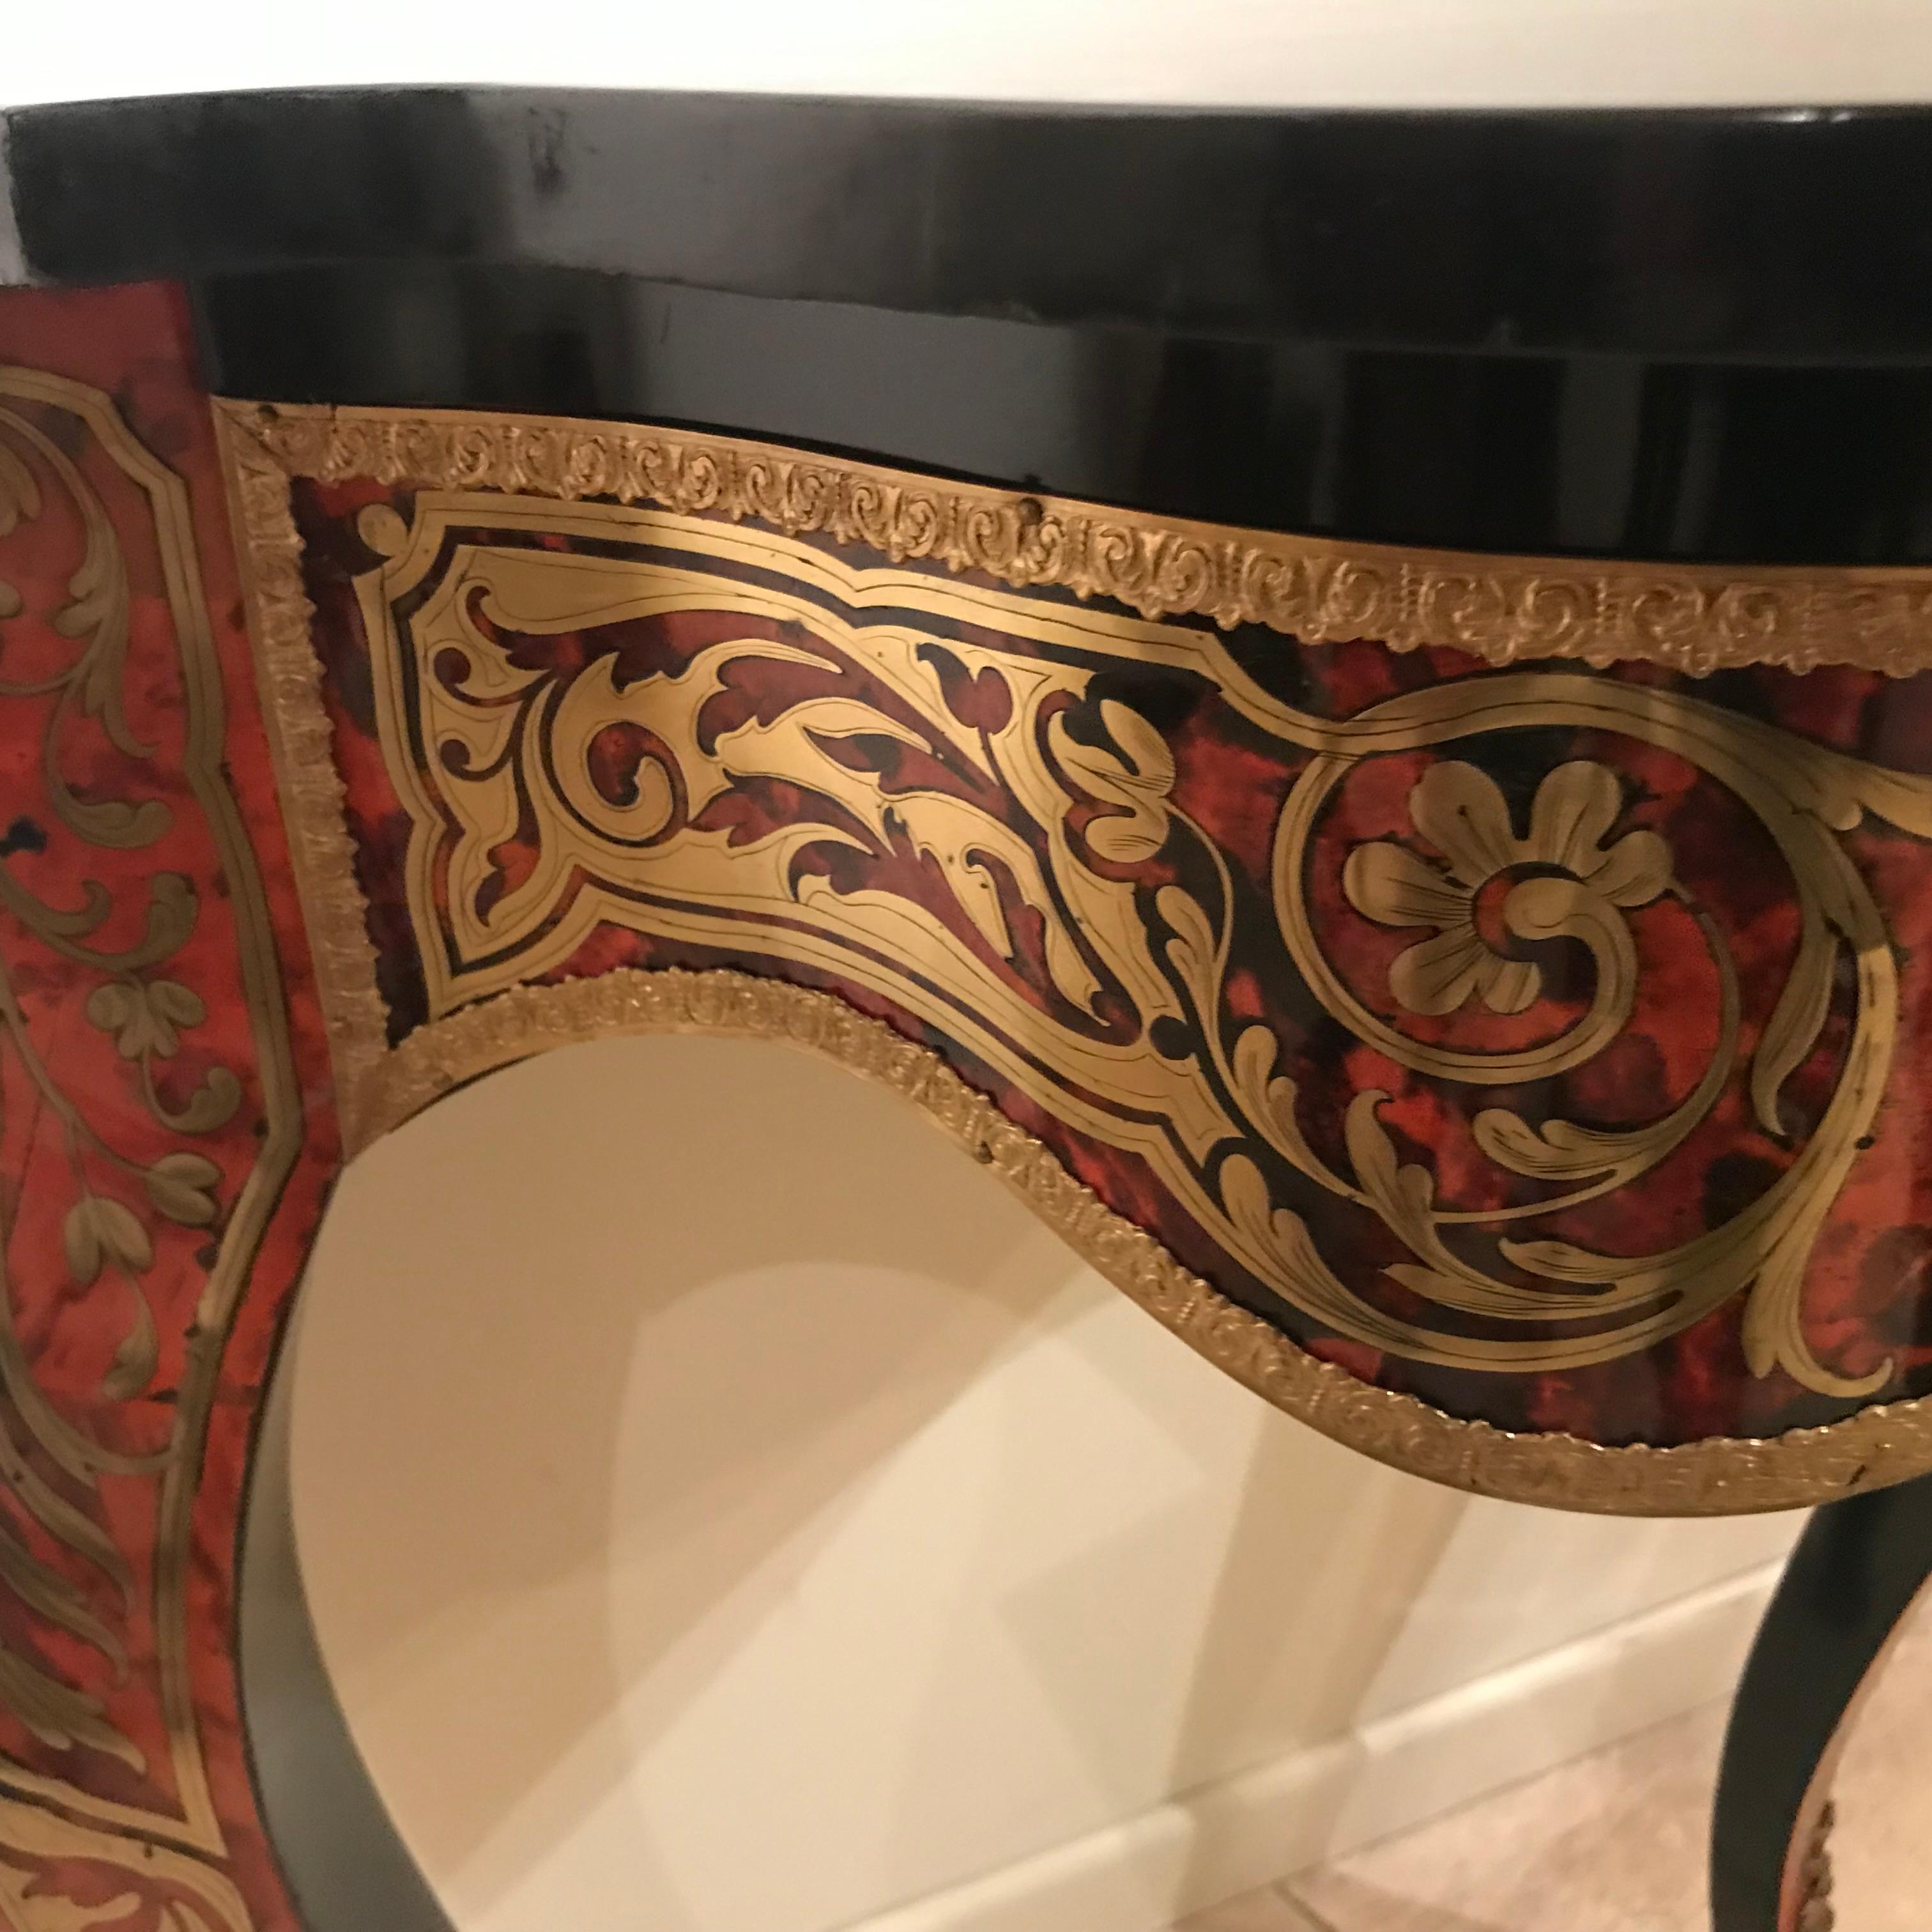 Paar Wand-Konsol-Tische, Boulle-Technik mit Messingintarsien, feuervergoldeten Bronzen, Frankreich, Napoleon III, 1852-73

Alte Restaurierung

H 77  cm, B 66 cm, T 34 cm